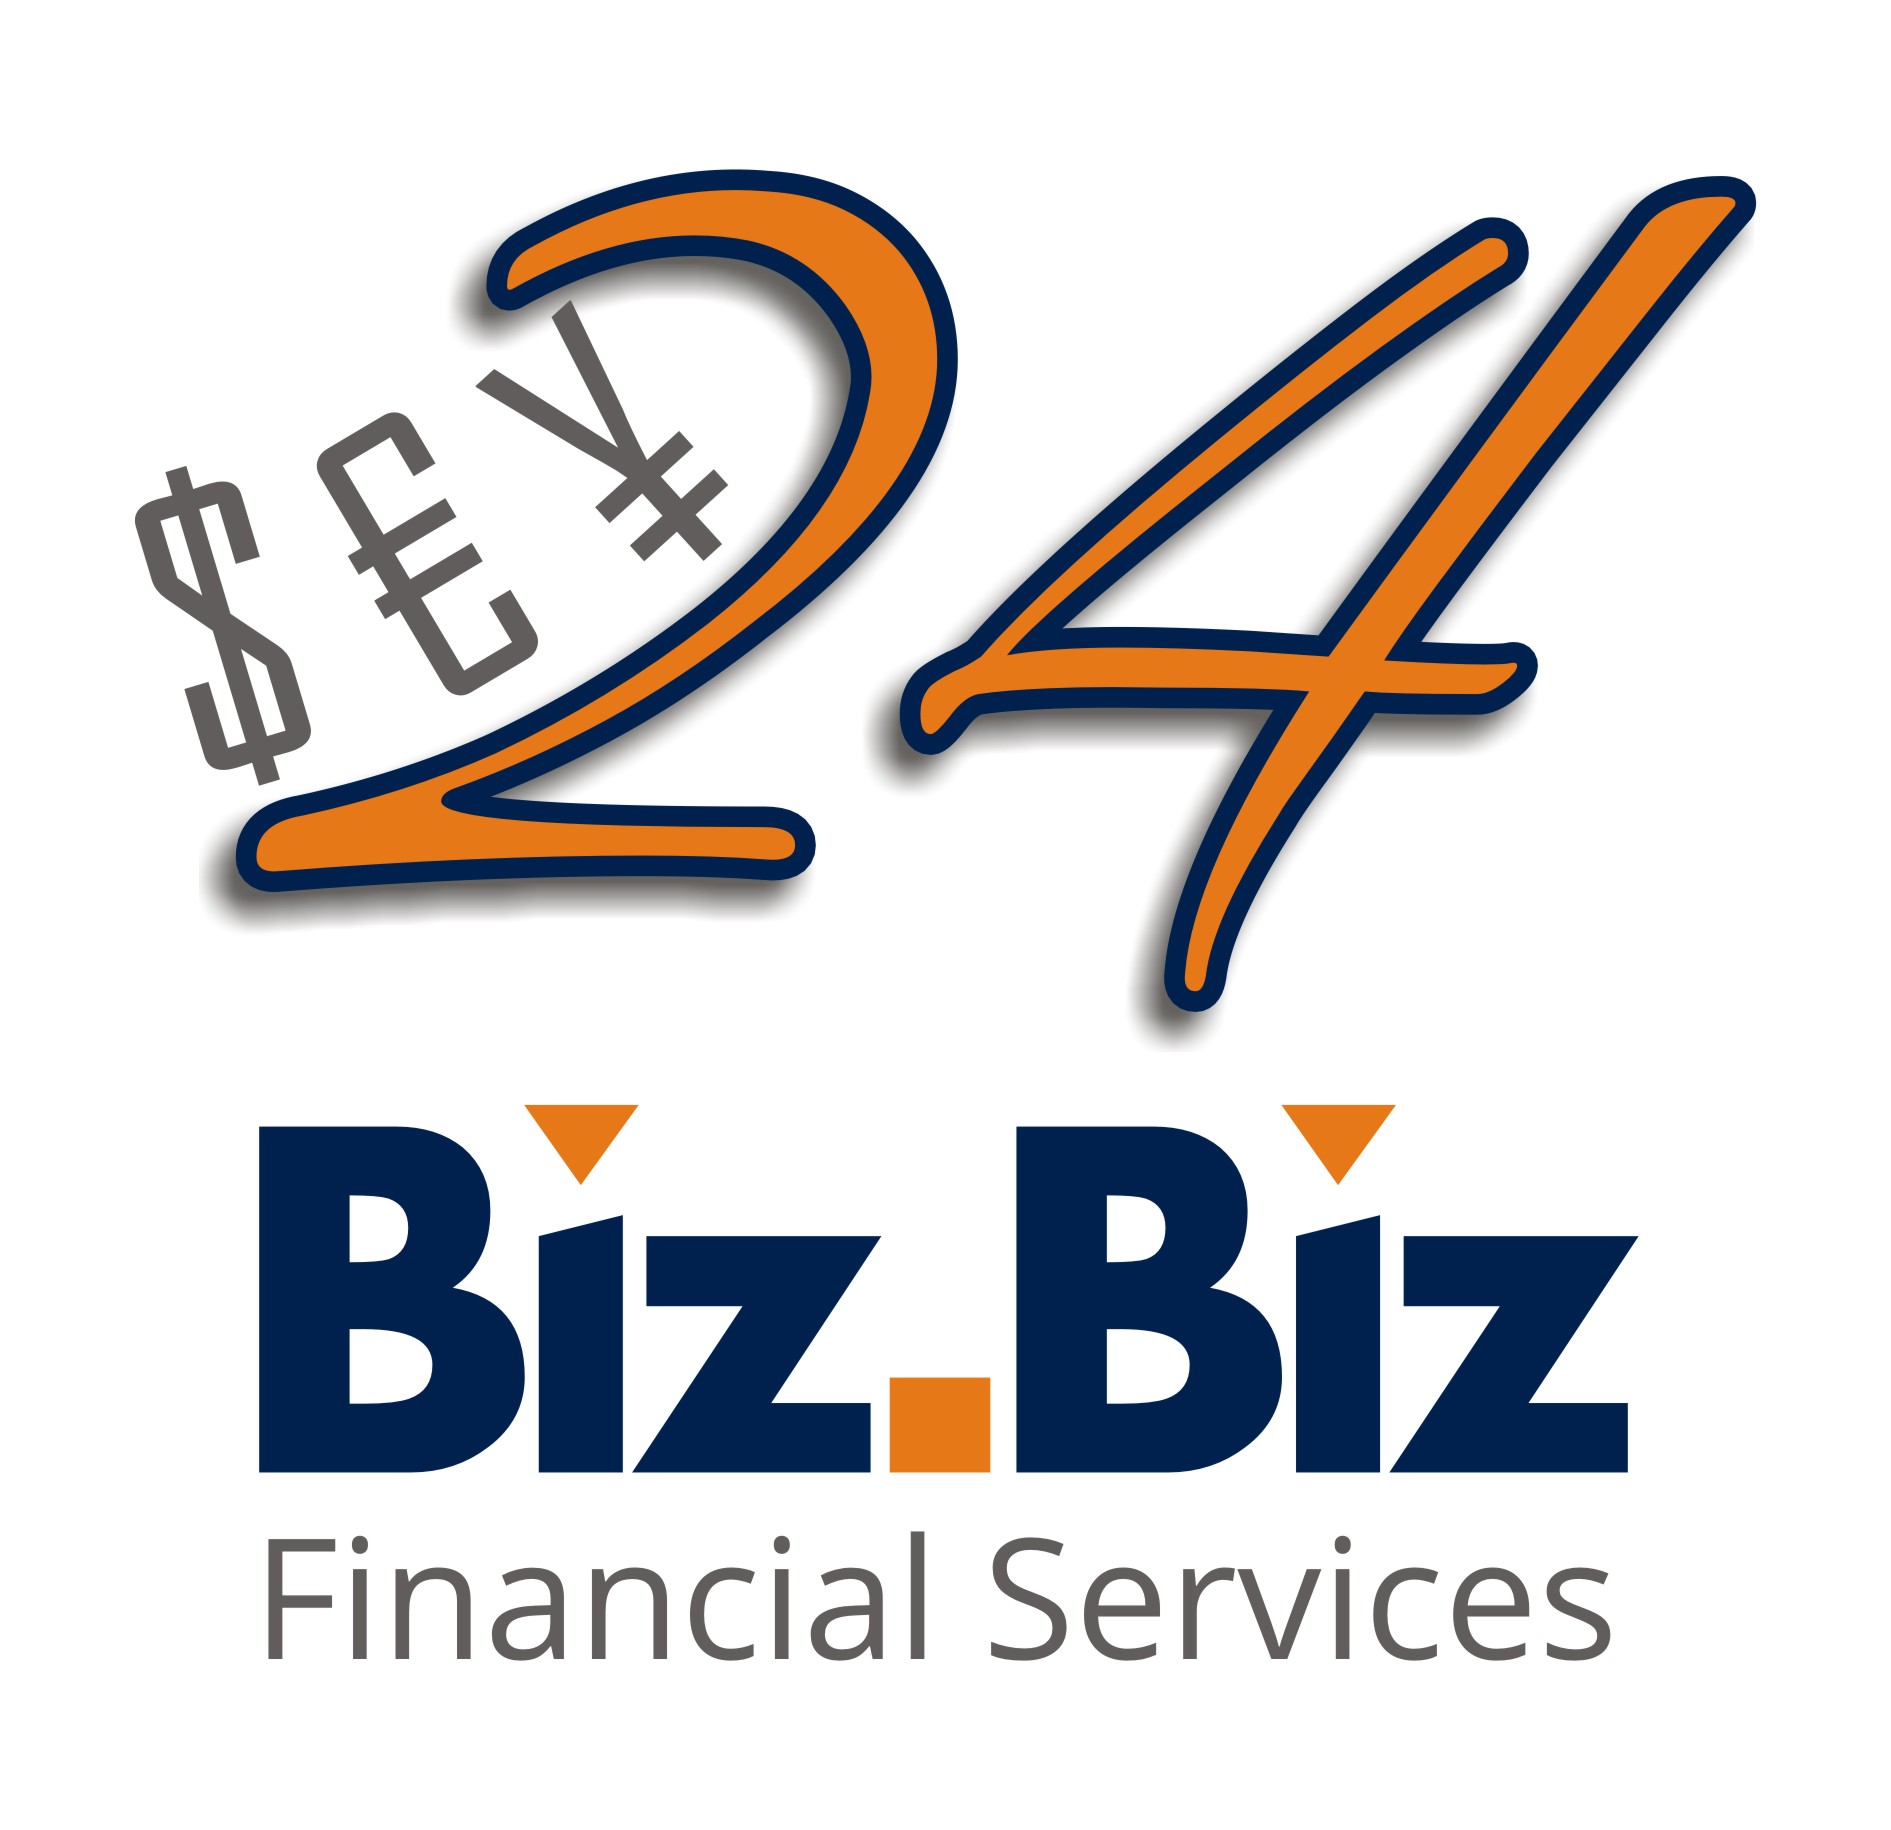 “24Biz” – 24/7 online financial services